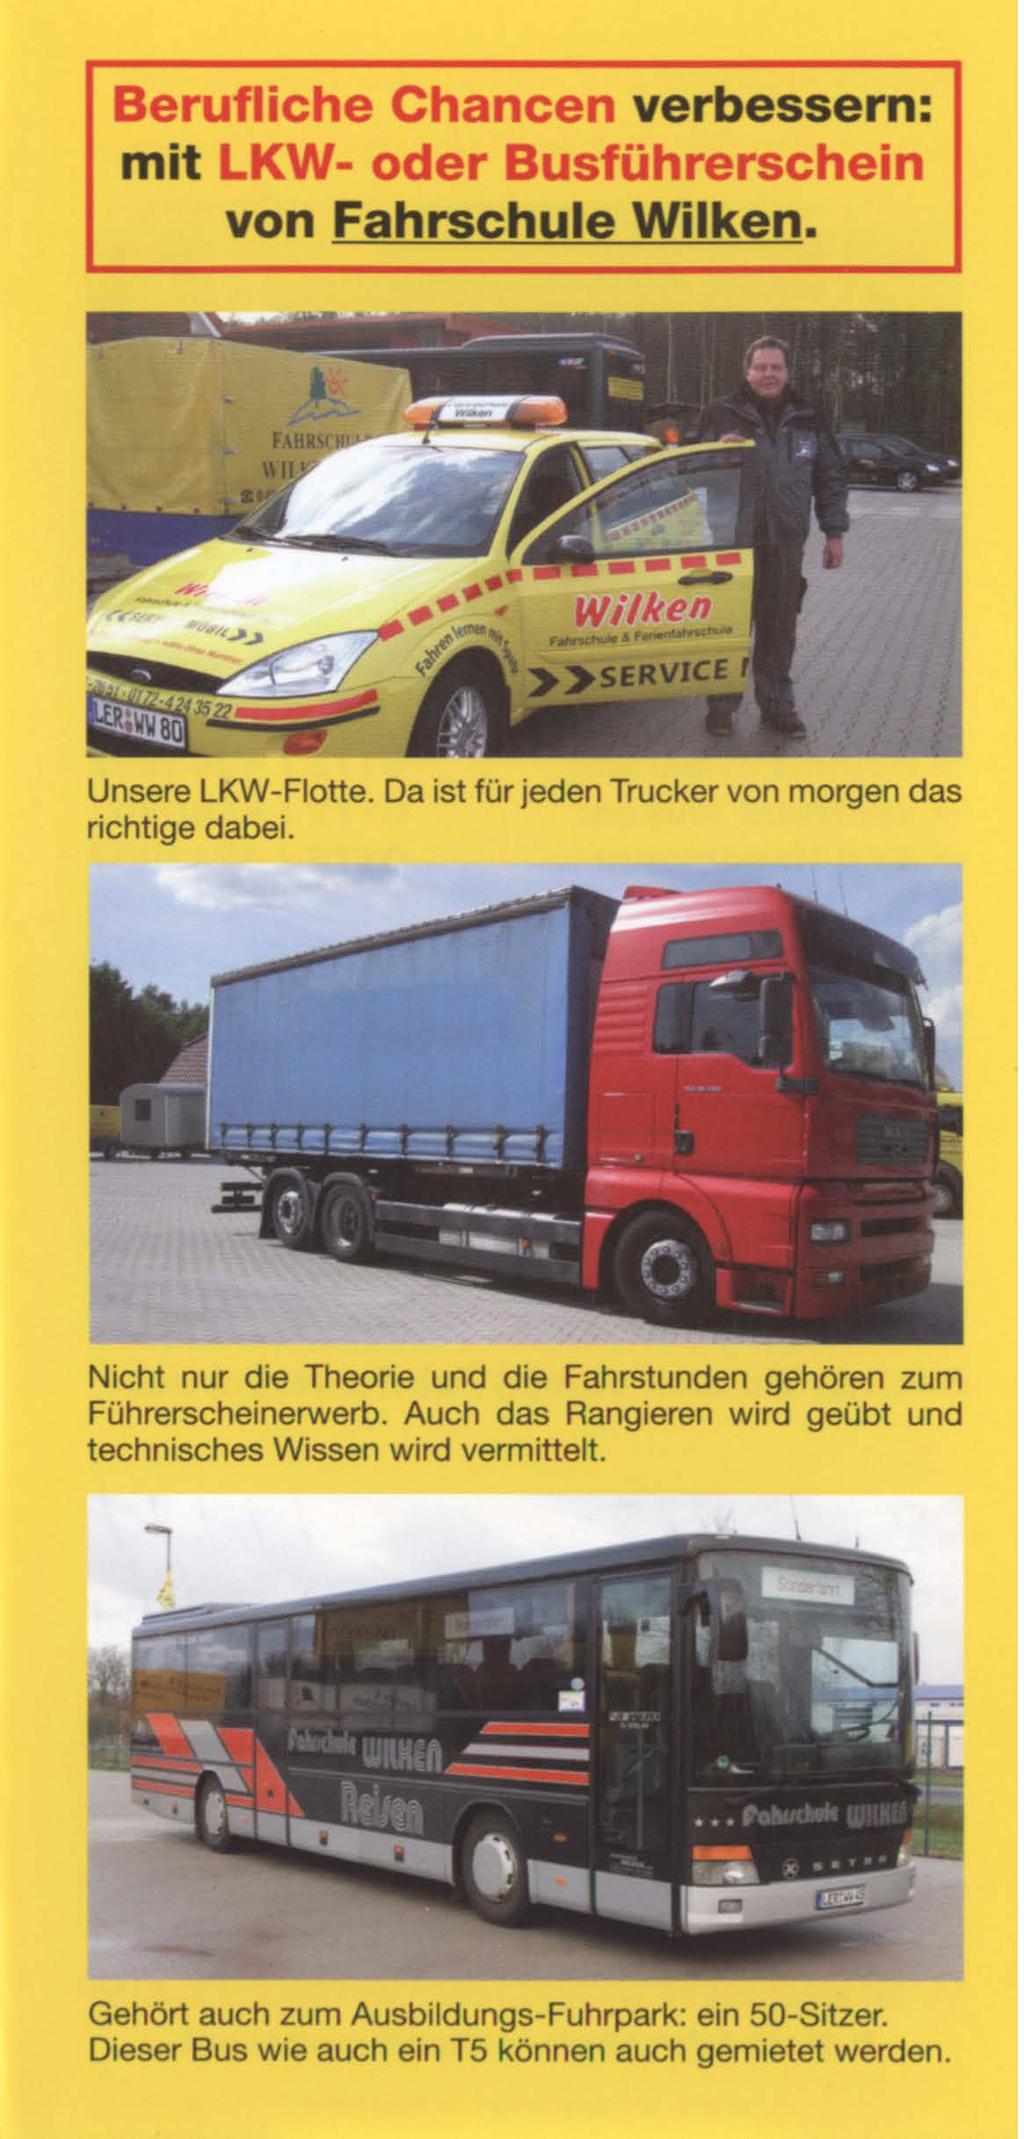 Berufliche Chancen verbessern: mit LKW- oder Busführerschein von Fahrschule Wilken. Unsere LKW-Flotte. Da ist für jeden Trucker von morgen das richtige dabei.